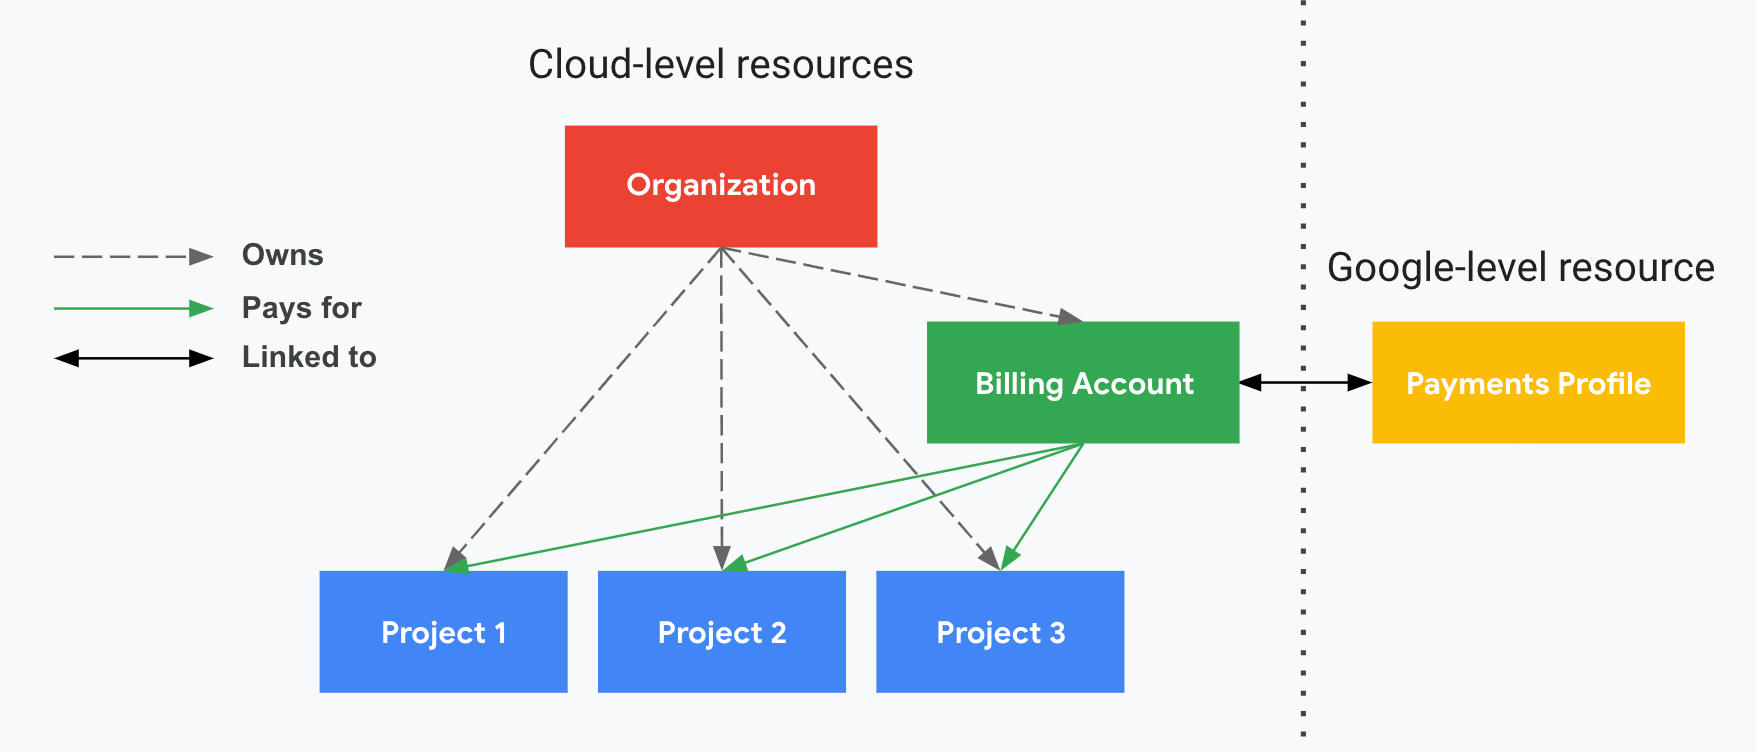 Muestra cómo se relacionan los proyectos con una cuenta de Facturación de Cloud y un perfil de pagos de Google. Una parte muestra los recursos de Google Cloud (cuenta de Facturación de Cloud y proyectos asociados) y la otra, dividida por una línea punteada vertical, muestra el recurso de Google (un perfil de pagos de Google).
      Los proyectos se pagan con la cuenta de Facturación de Cloud vinculada a un perfil de pagos de Google.